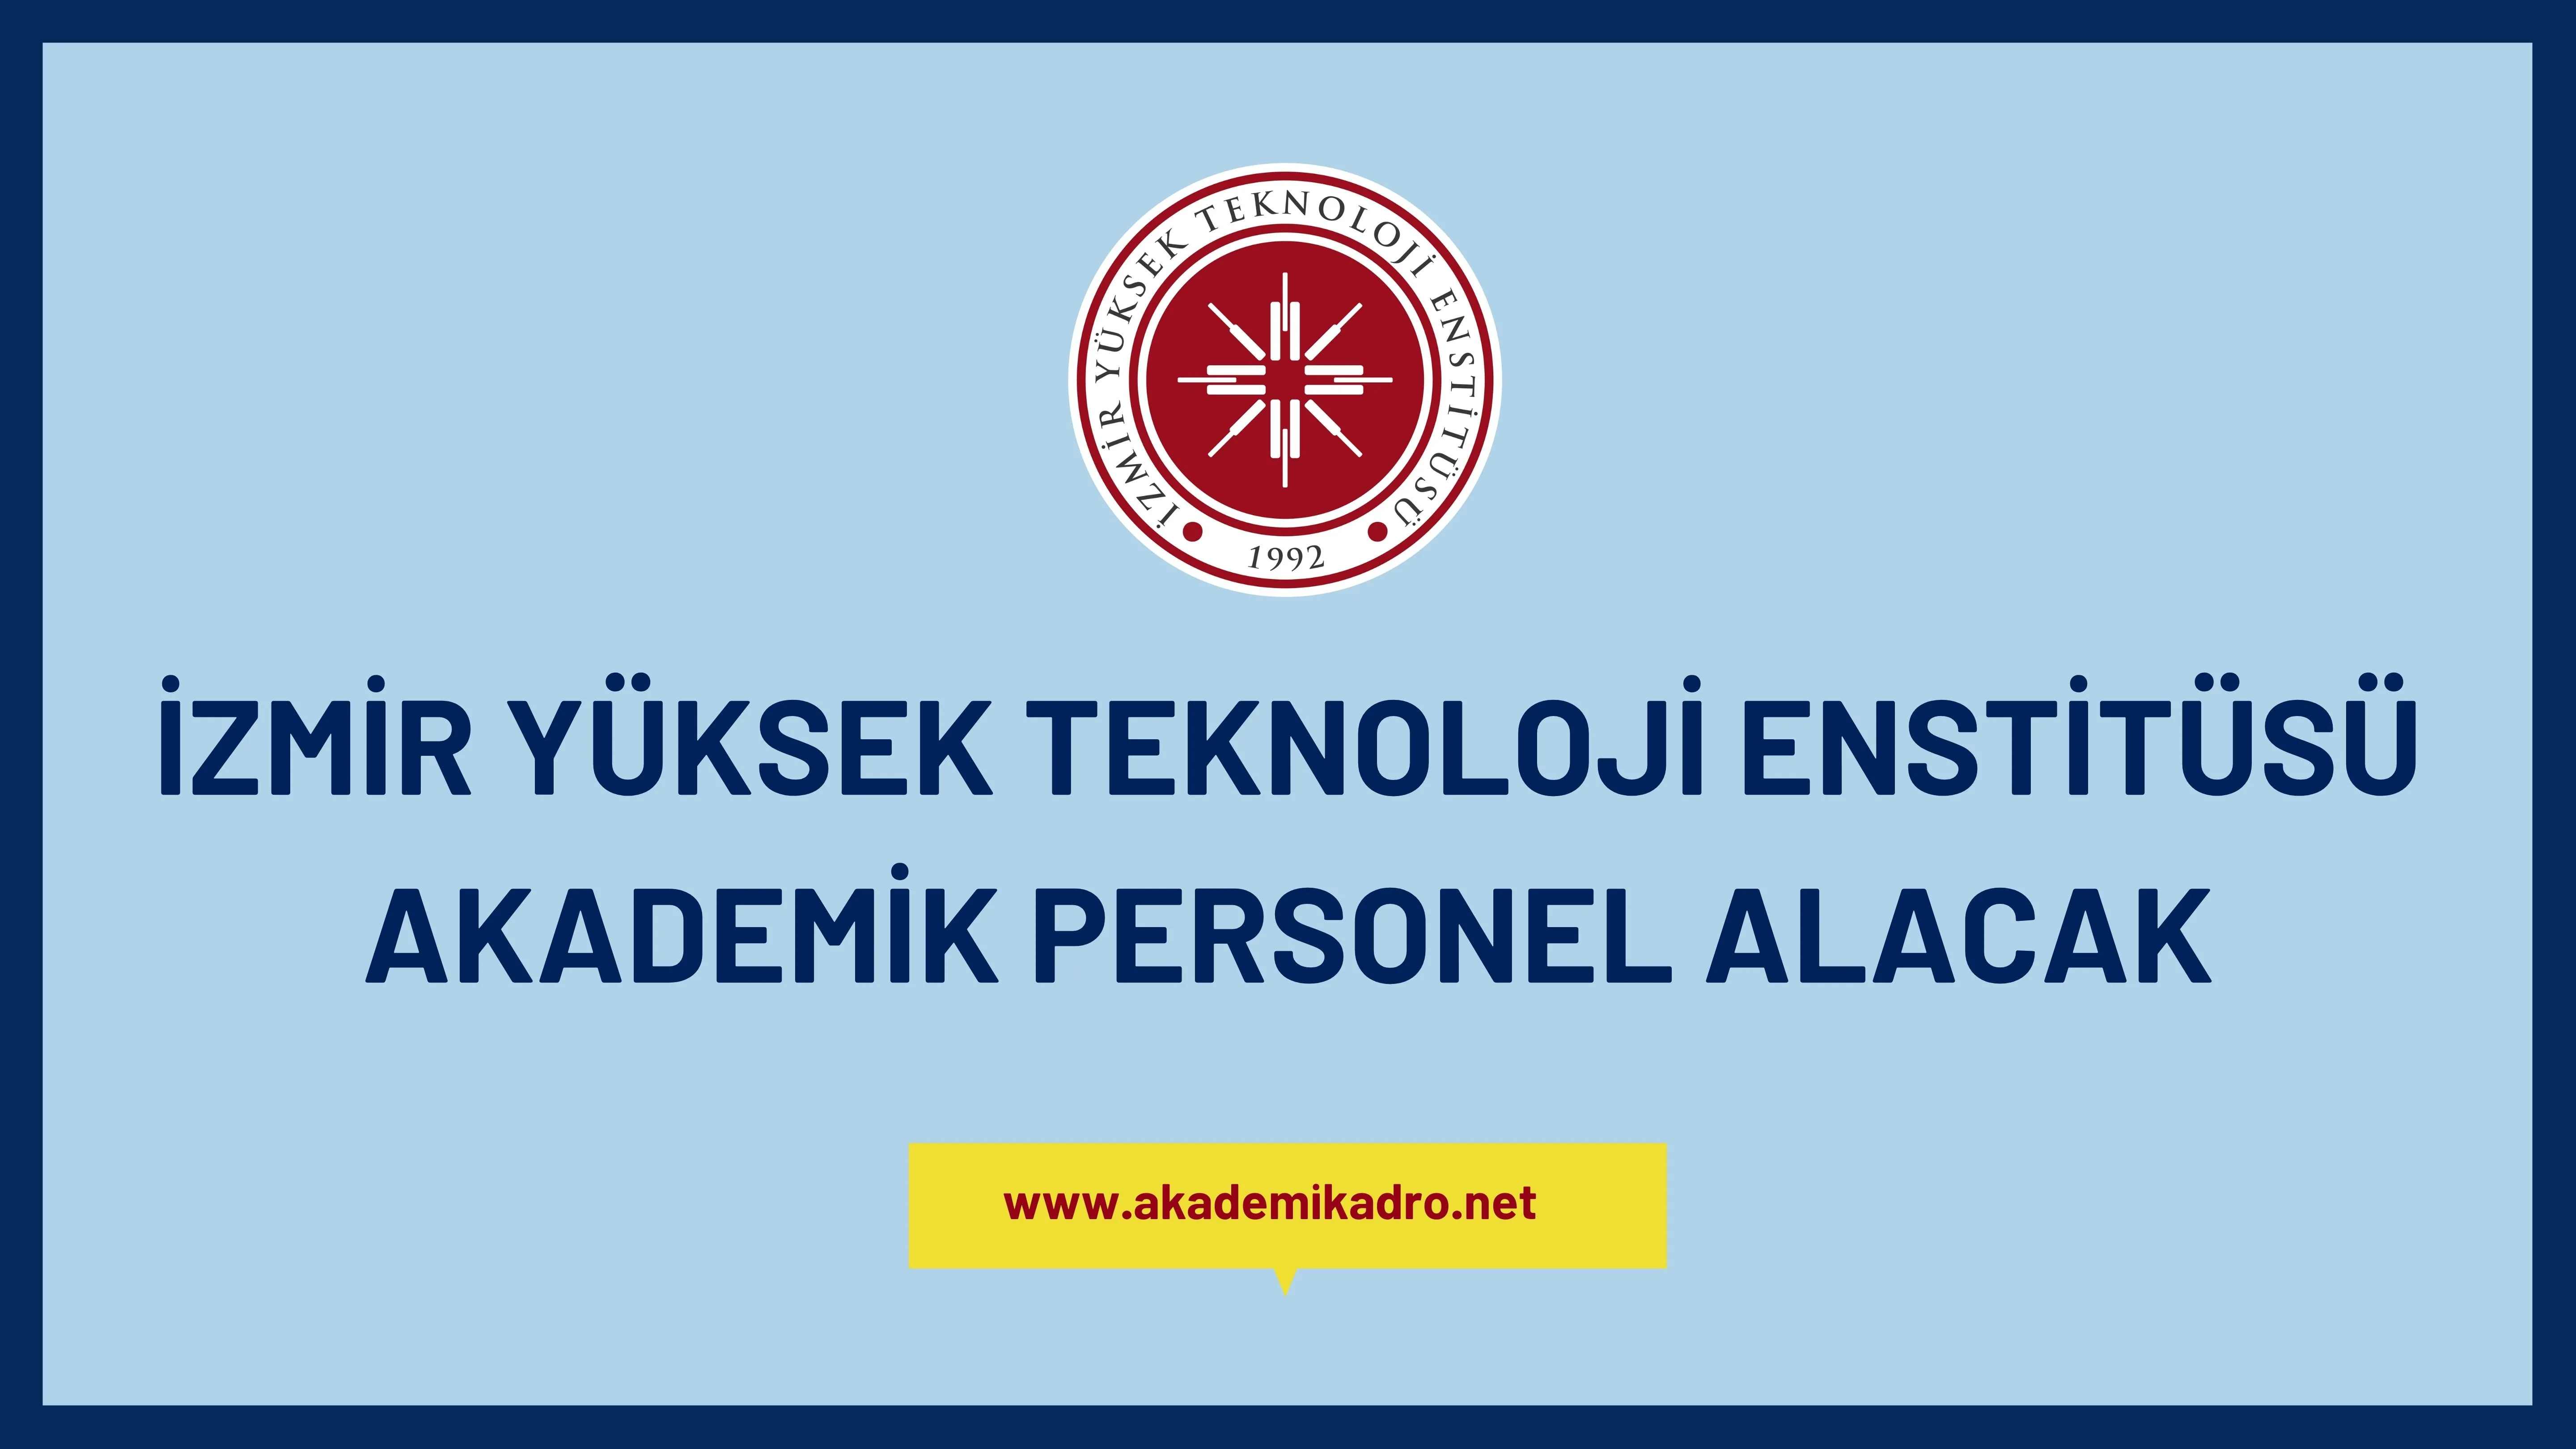 İzmir Yüksek Teknoloji Enstitüsü 3 öğretim üyesi alacaktır.